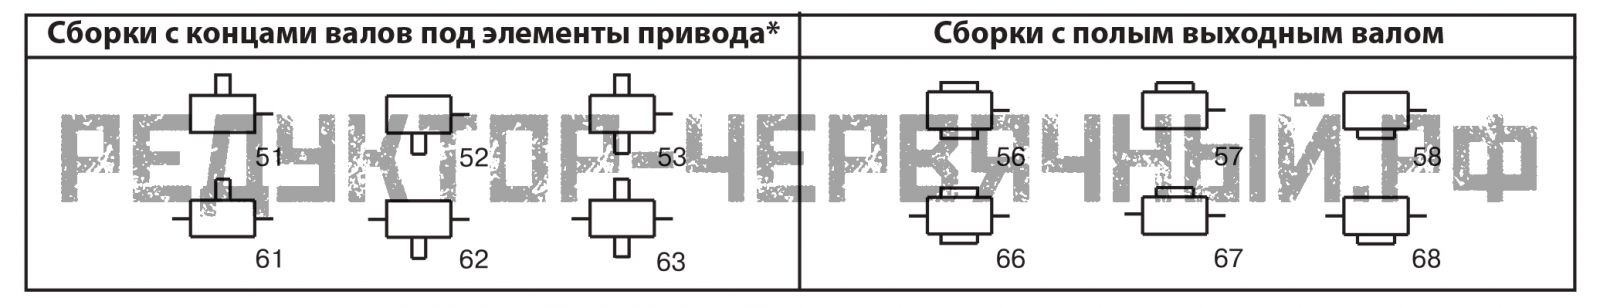 Варианты сборки редуктора 6Ч - 100